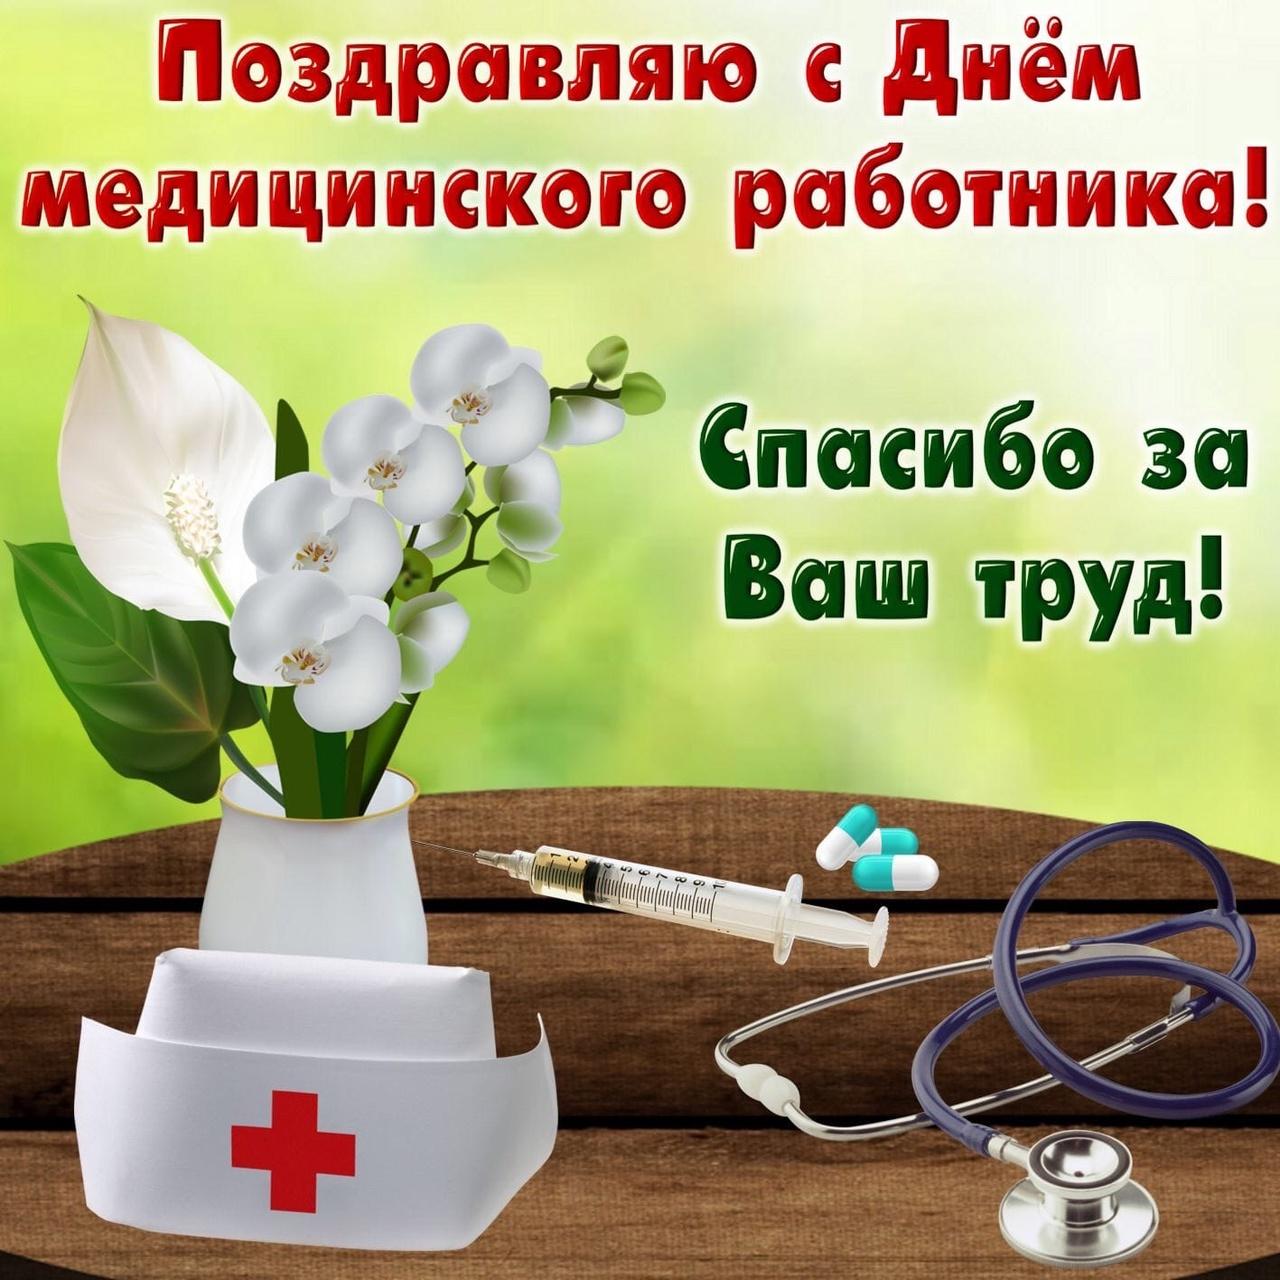 Картинки с Днем медика в Украине: открытки, фото – Люкс ФМ